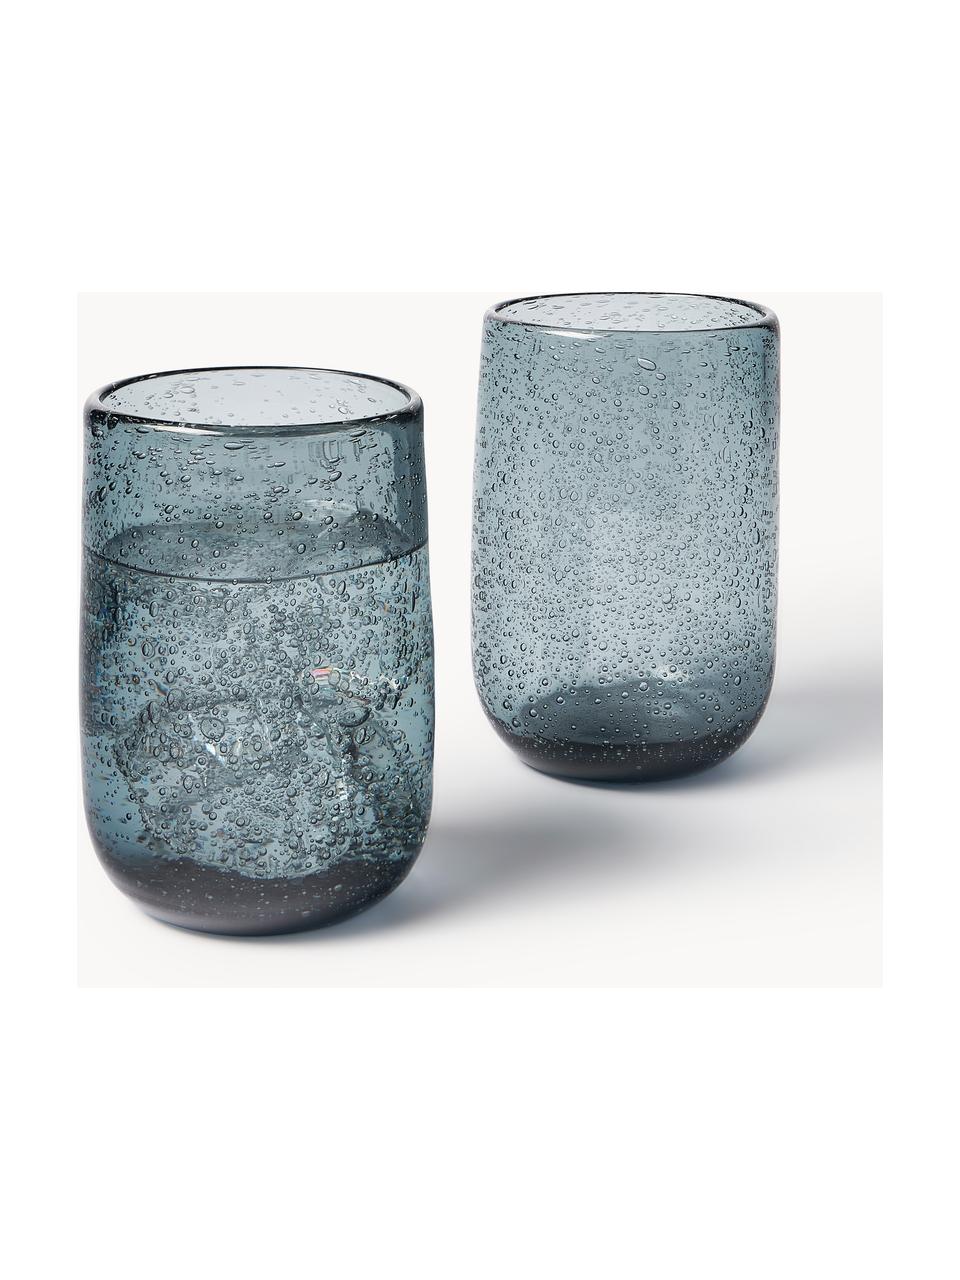 Wassergläser Bari mit Luftbläschen, 6 Stück, Glas, Graublau, Ø 7 x H 11 cm, 330 ml